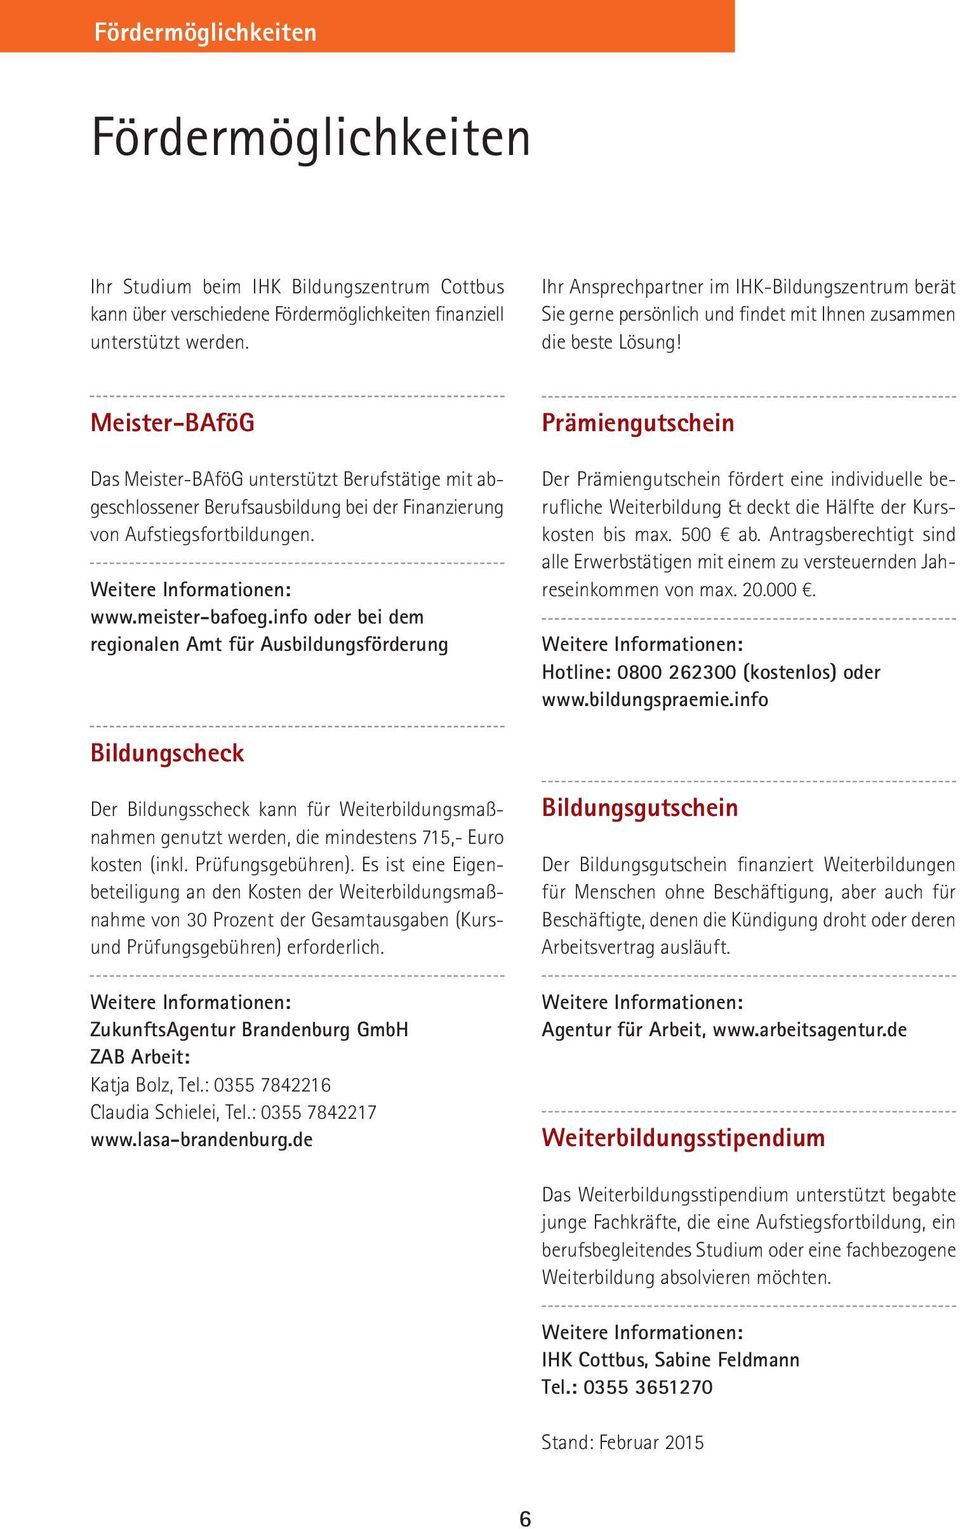 Meister-BAföG Das Meister-BAföG unterstützt Berufstätige mit abgeschlossener Berufsausbildung bei der Finanzierung von Aufstiegsfortbildungen. Weitere Informationen: www.meister-bafoeg.